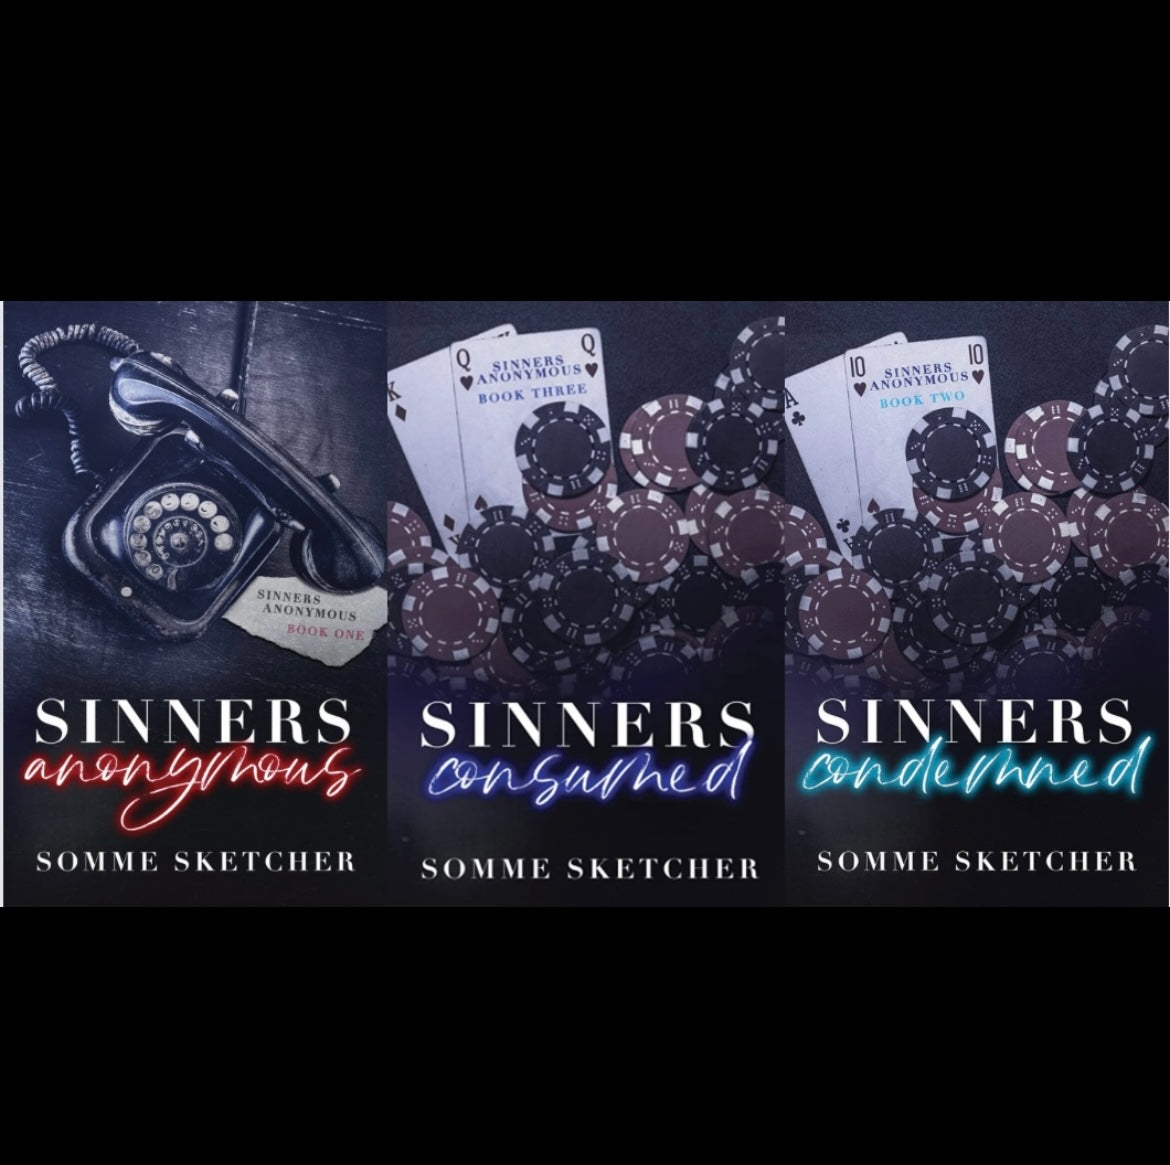 Sinners series